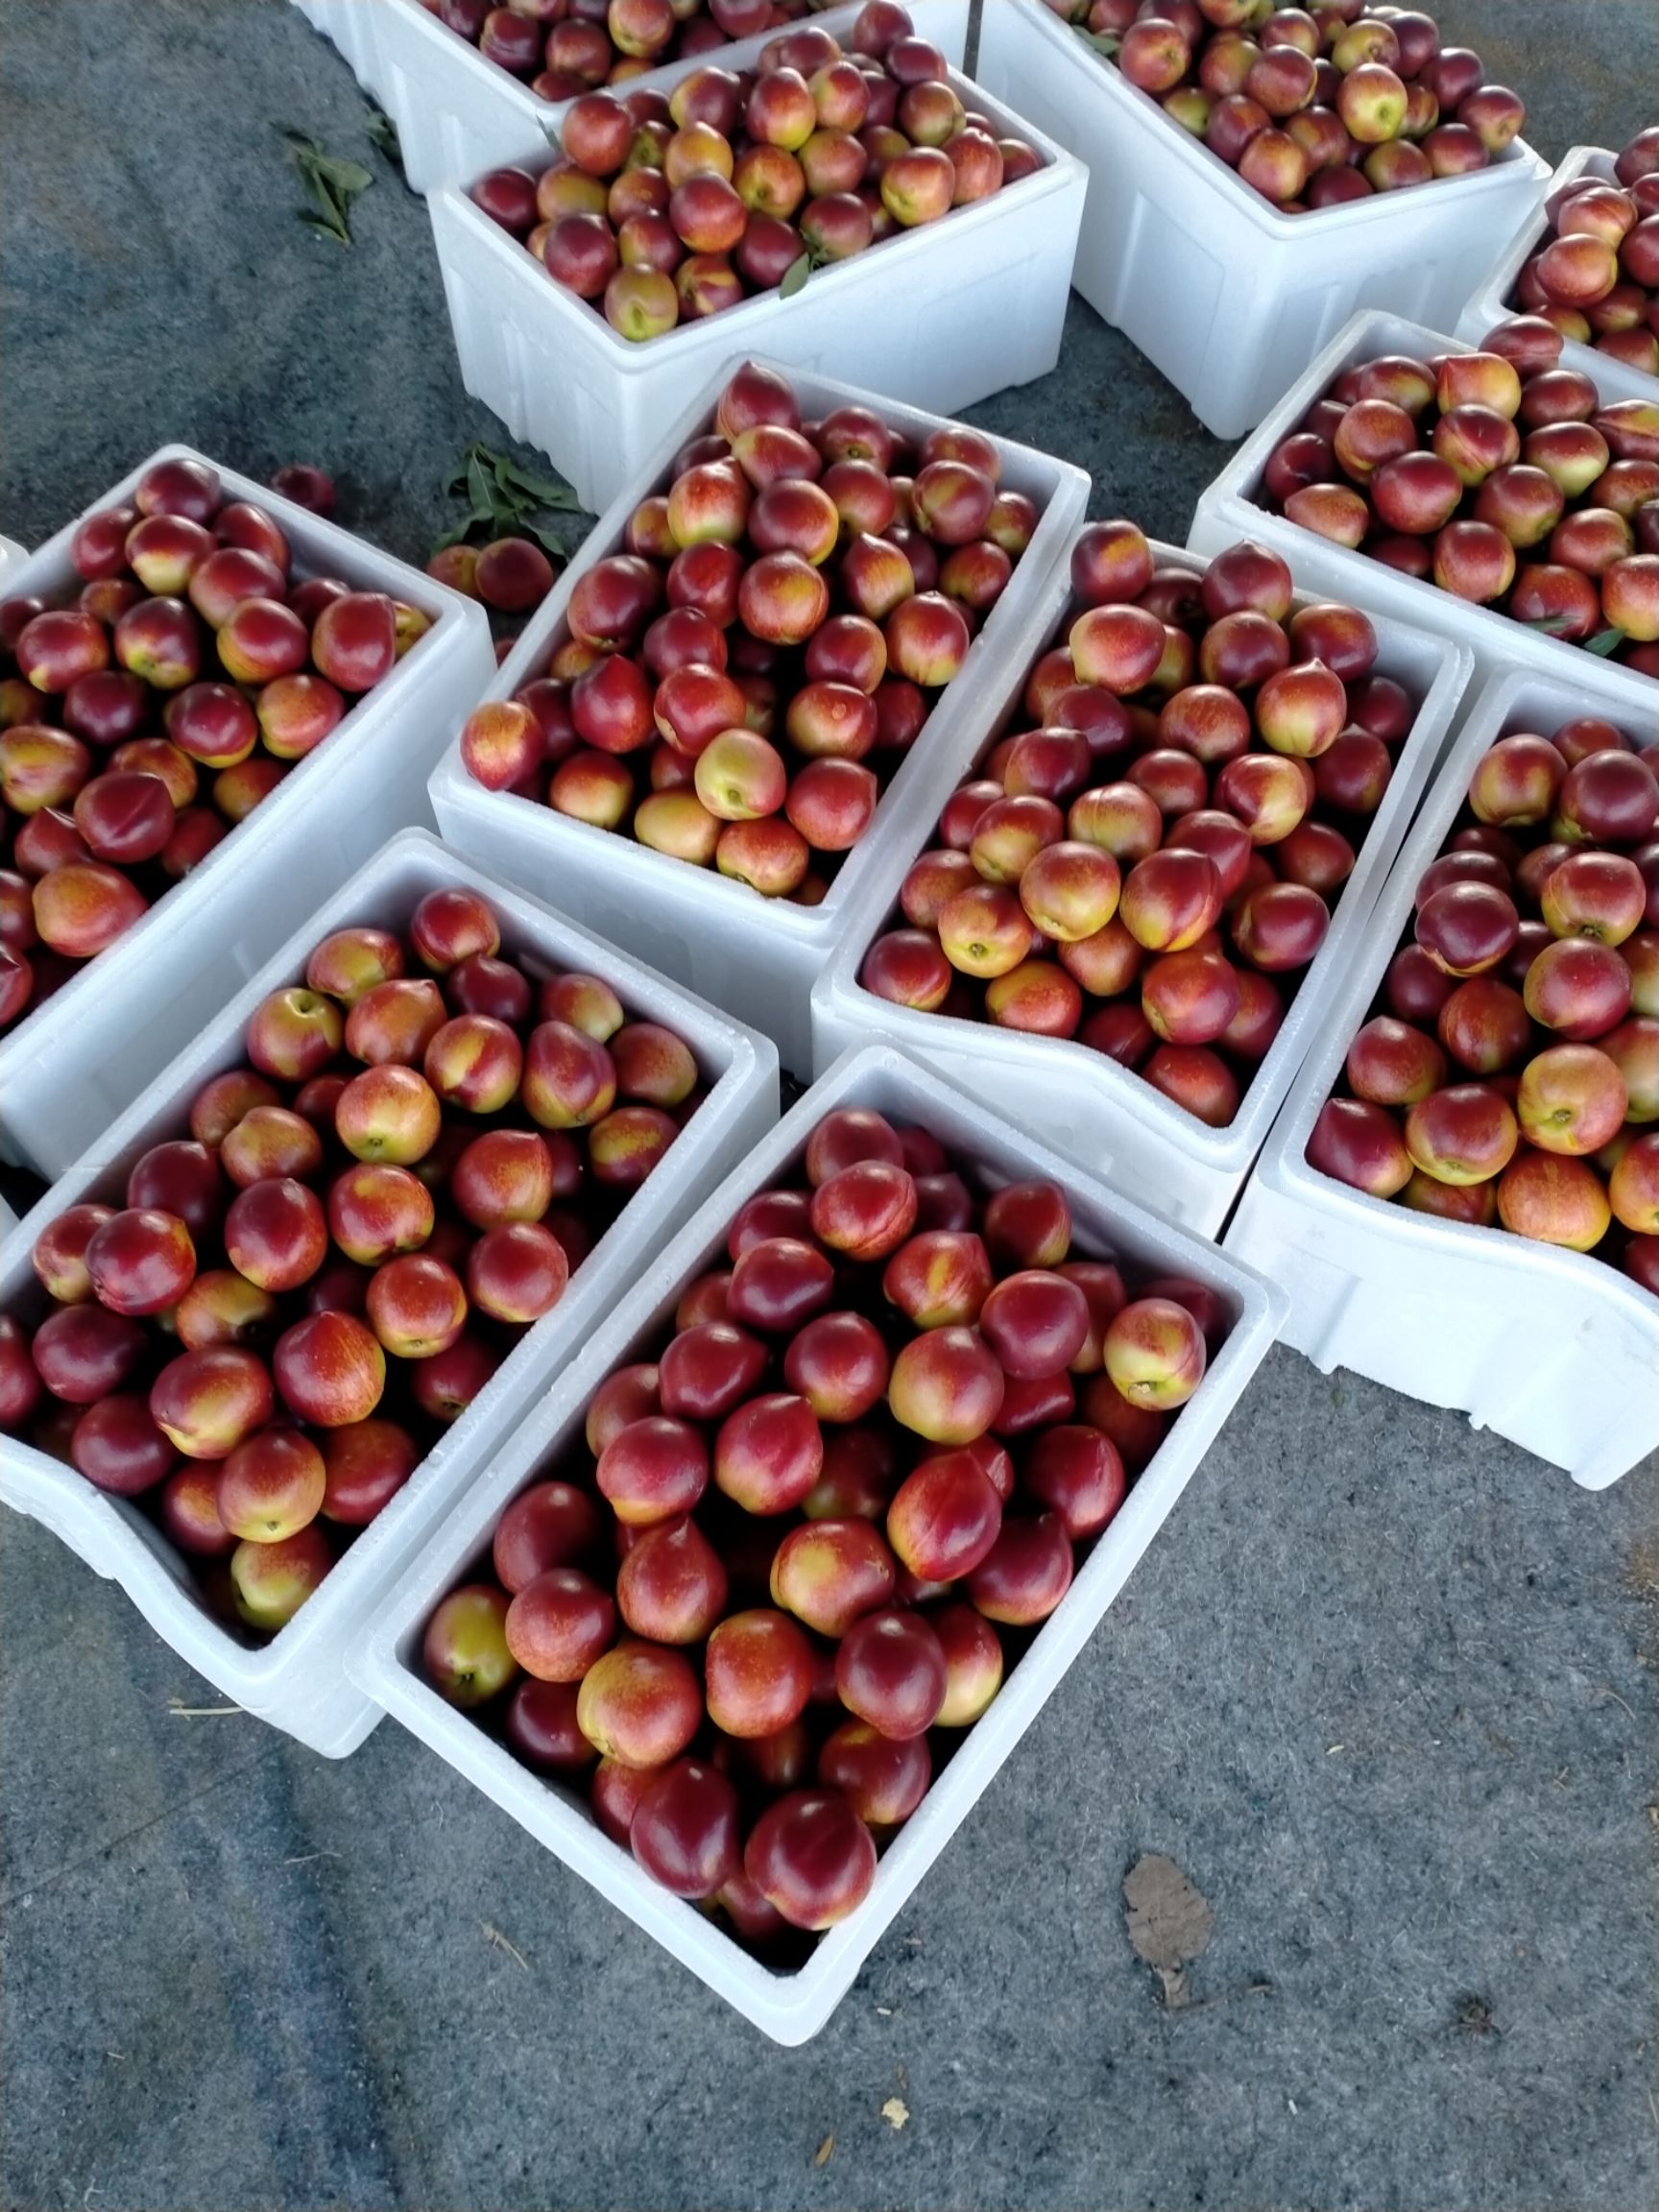 [126油桃批发] 大棚油桃大量上市价格1元/斤 - 惠农网